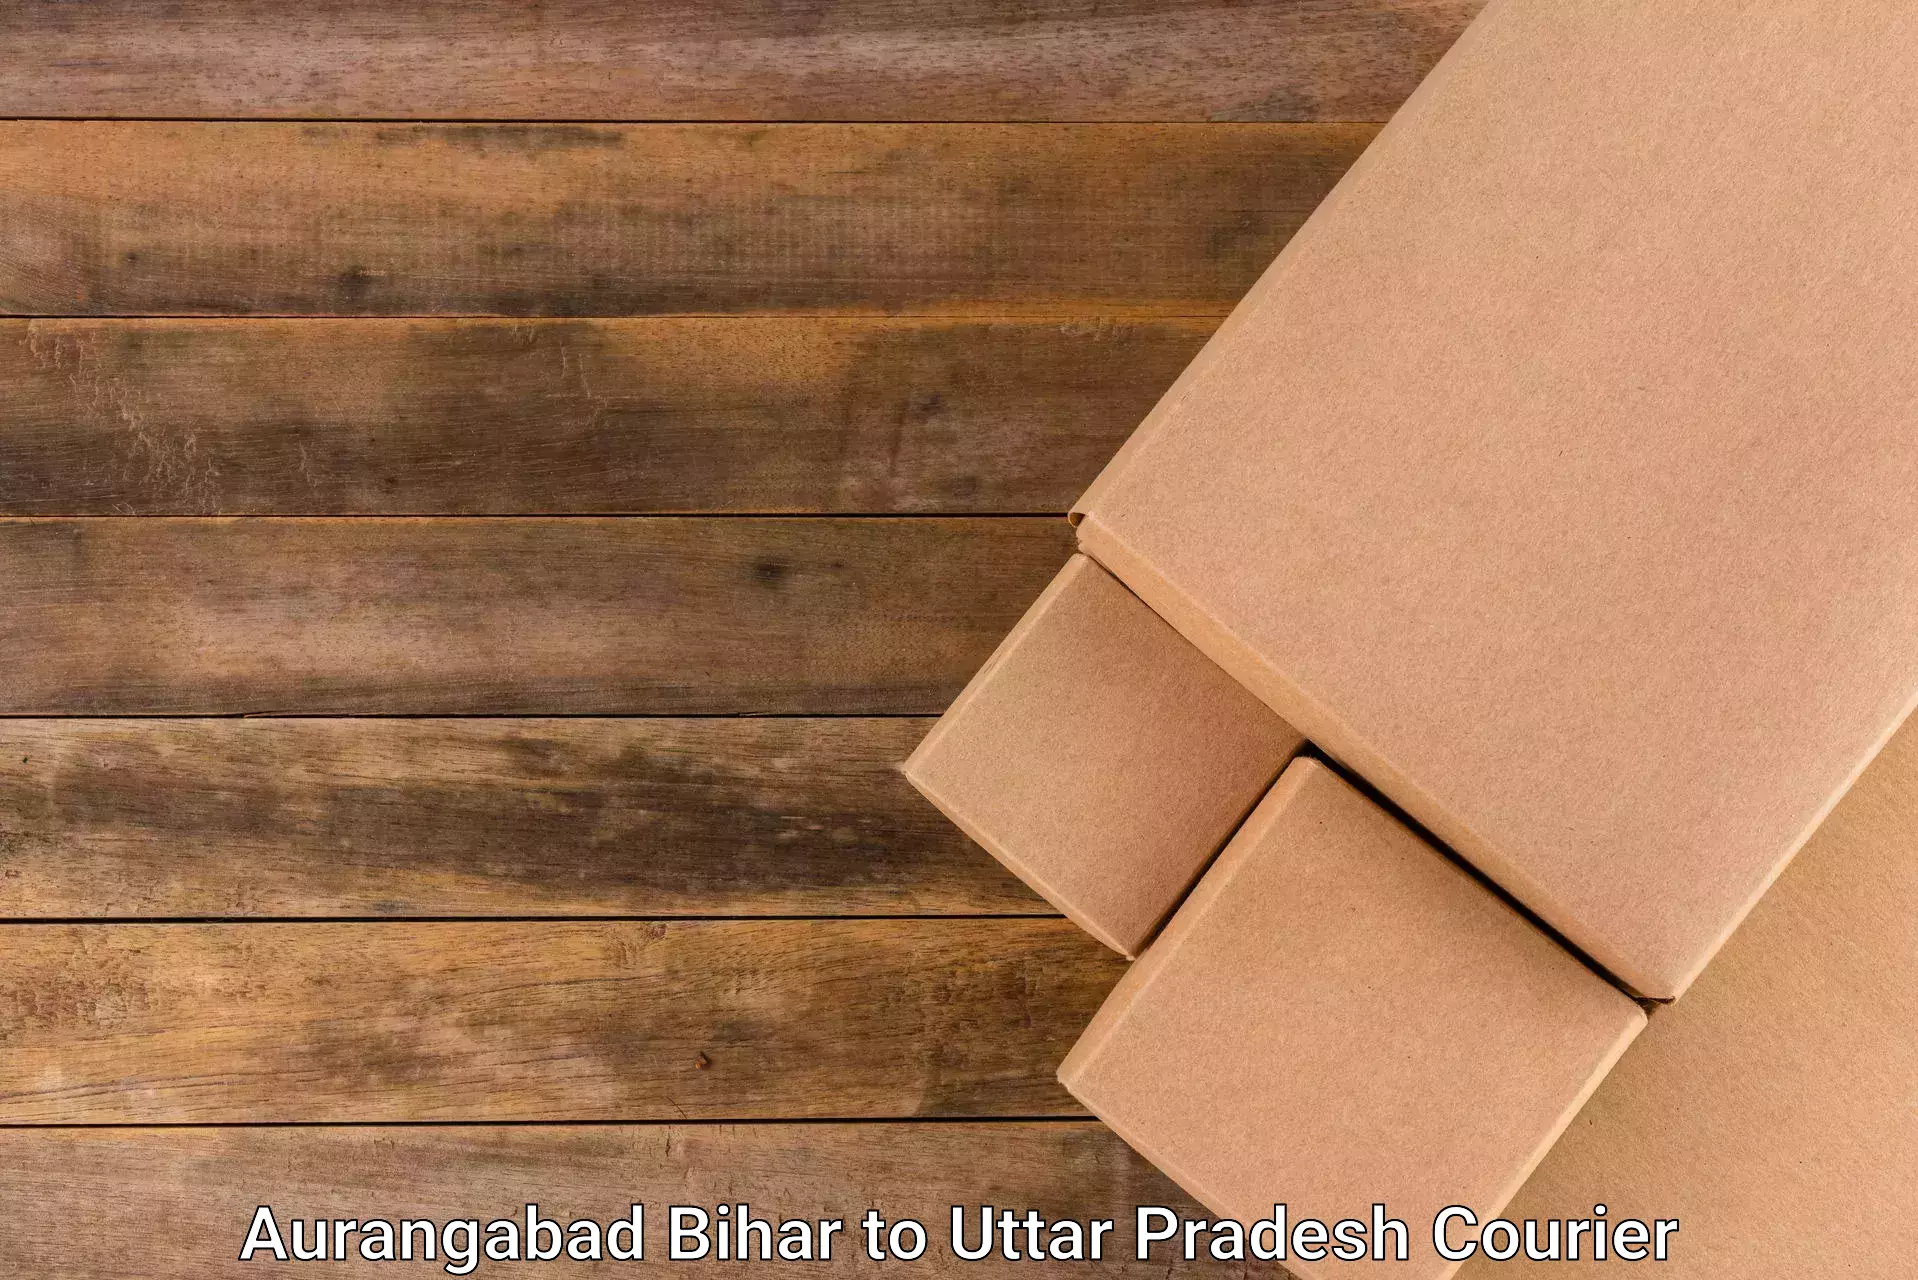 Logistics efficiency Aurangabad Bihar to Vrindavan